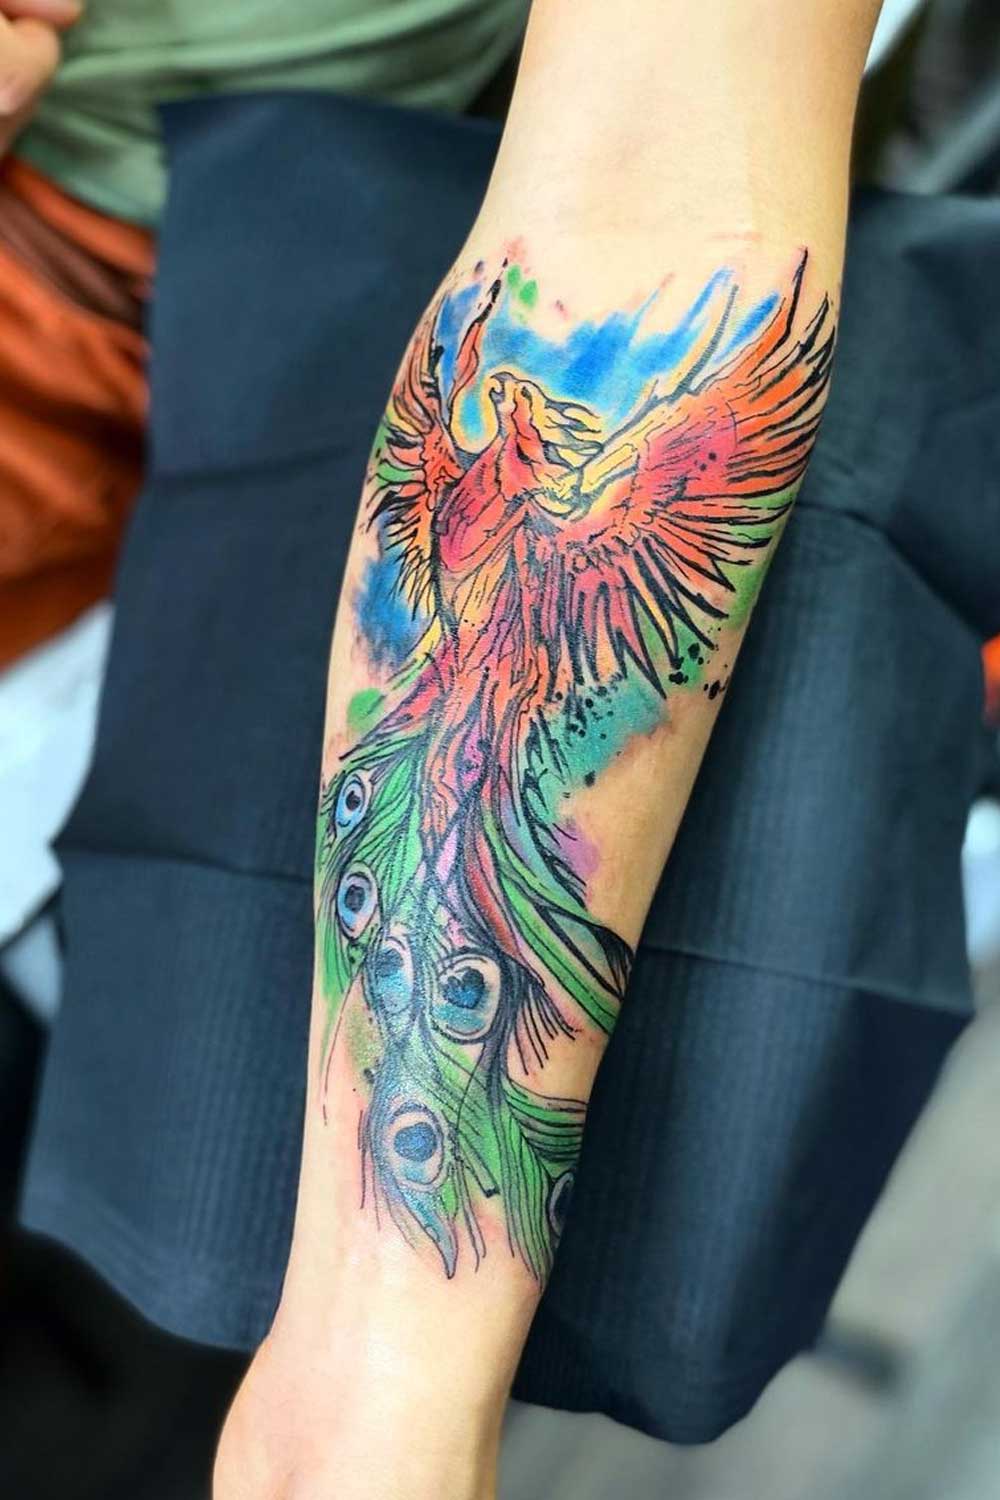 Poster tribal phoenix tattoo - PIXERS.US